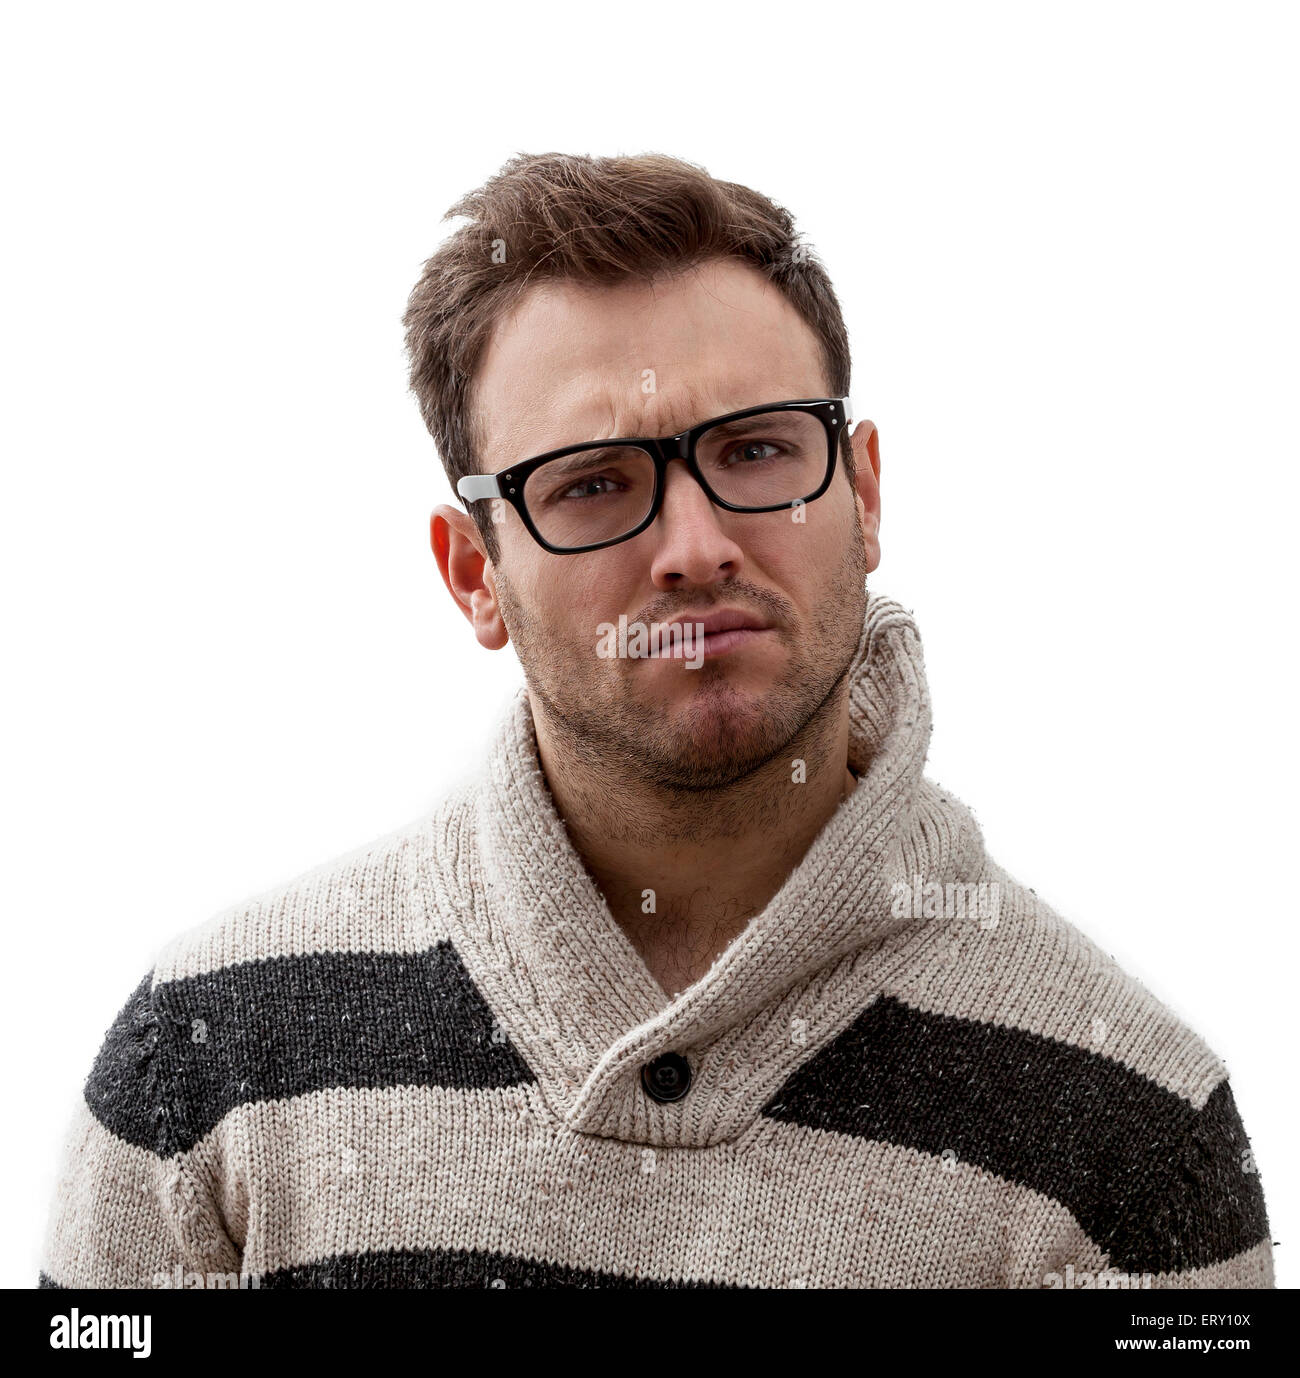 Porträt von ein hübscher junger Mann mit einem verwirrten Ausdruck, vor einem weißen Hintergrund Stockfoto